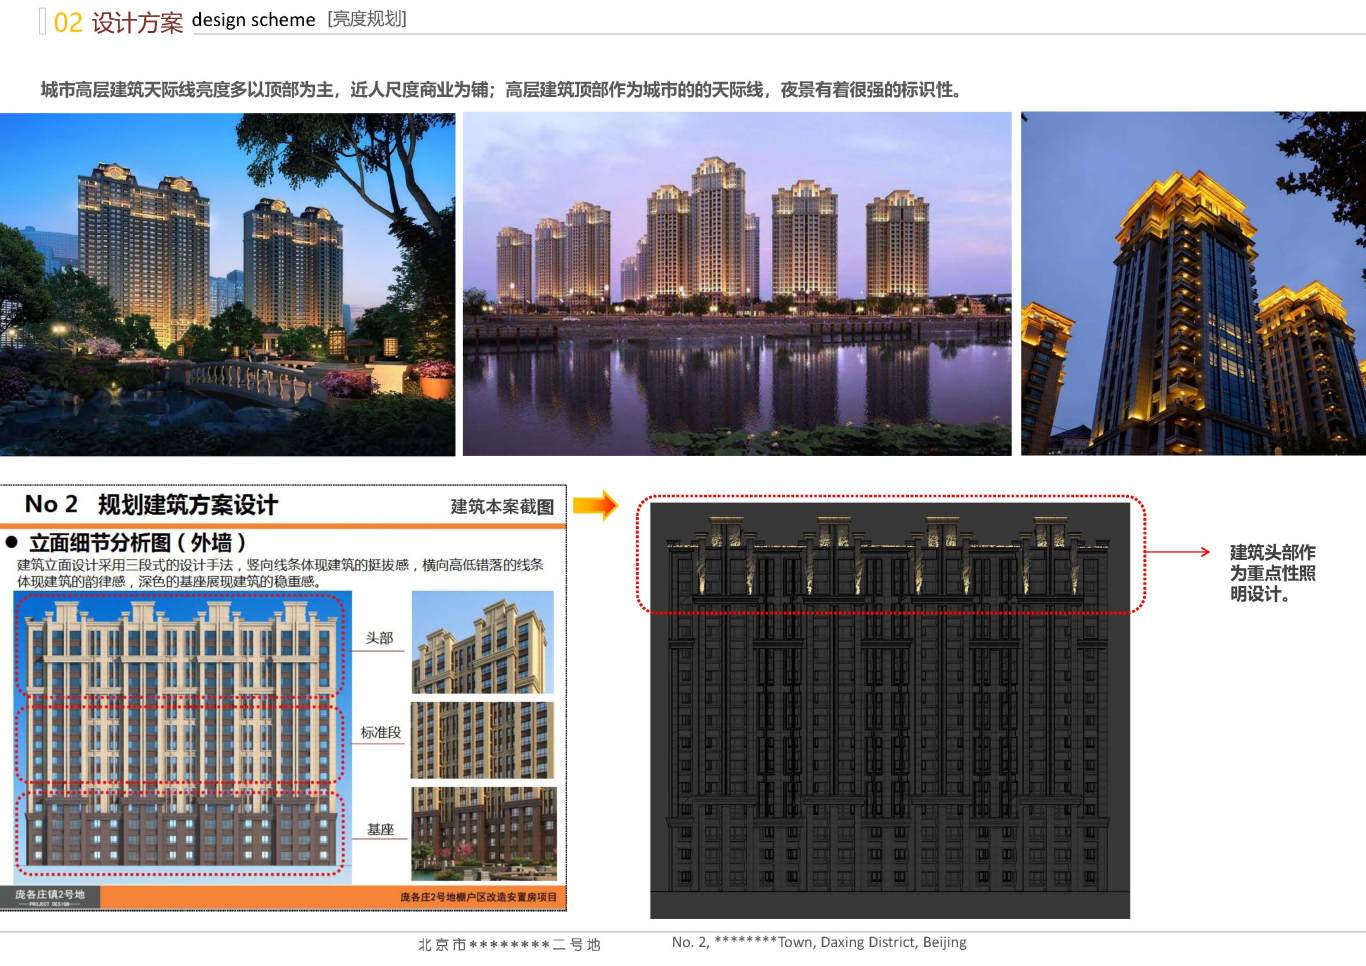 北京市大兴区*****二号地夜景照明项目案例图11